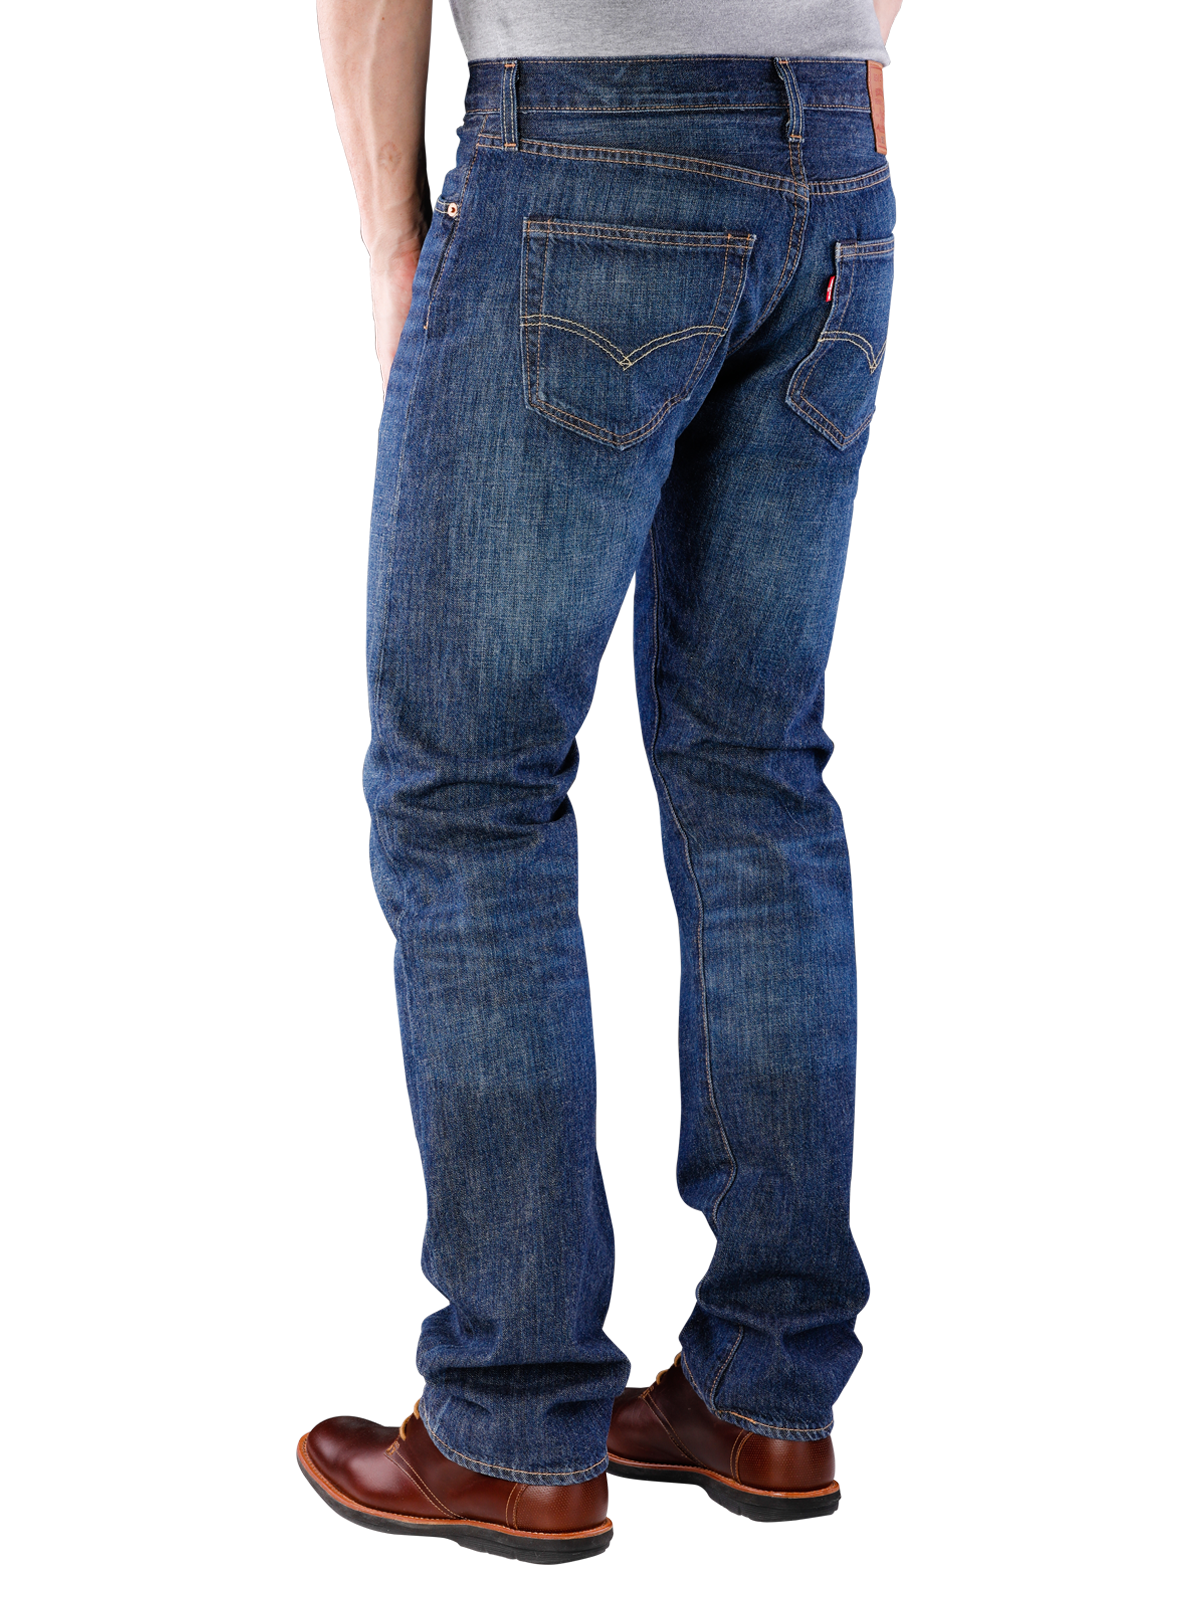 Levi's 501 Jeans Straight Fit cheviot | Livraison gratuite ... - Levi Strauss 501 Jeans